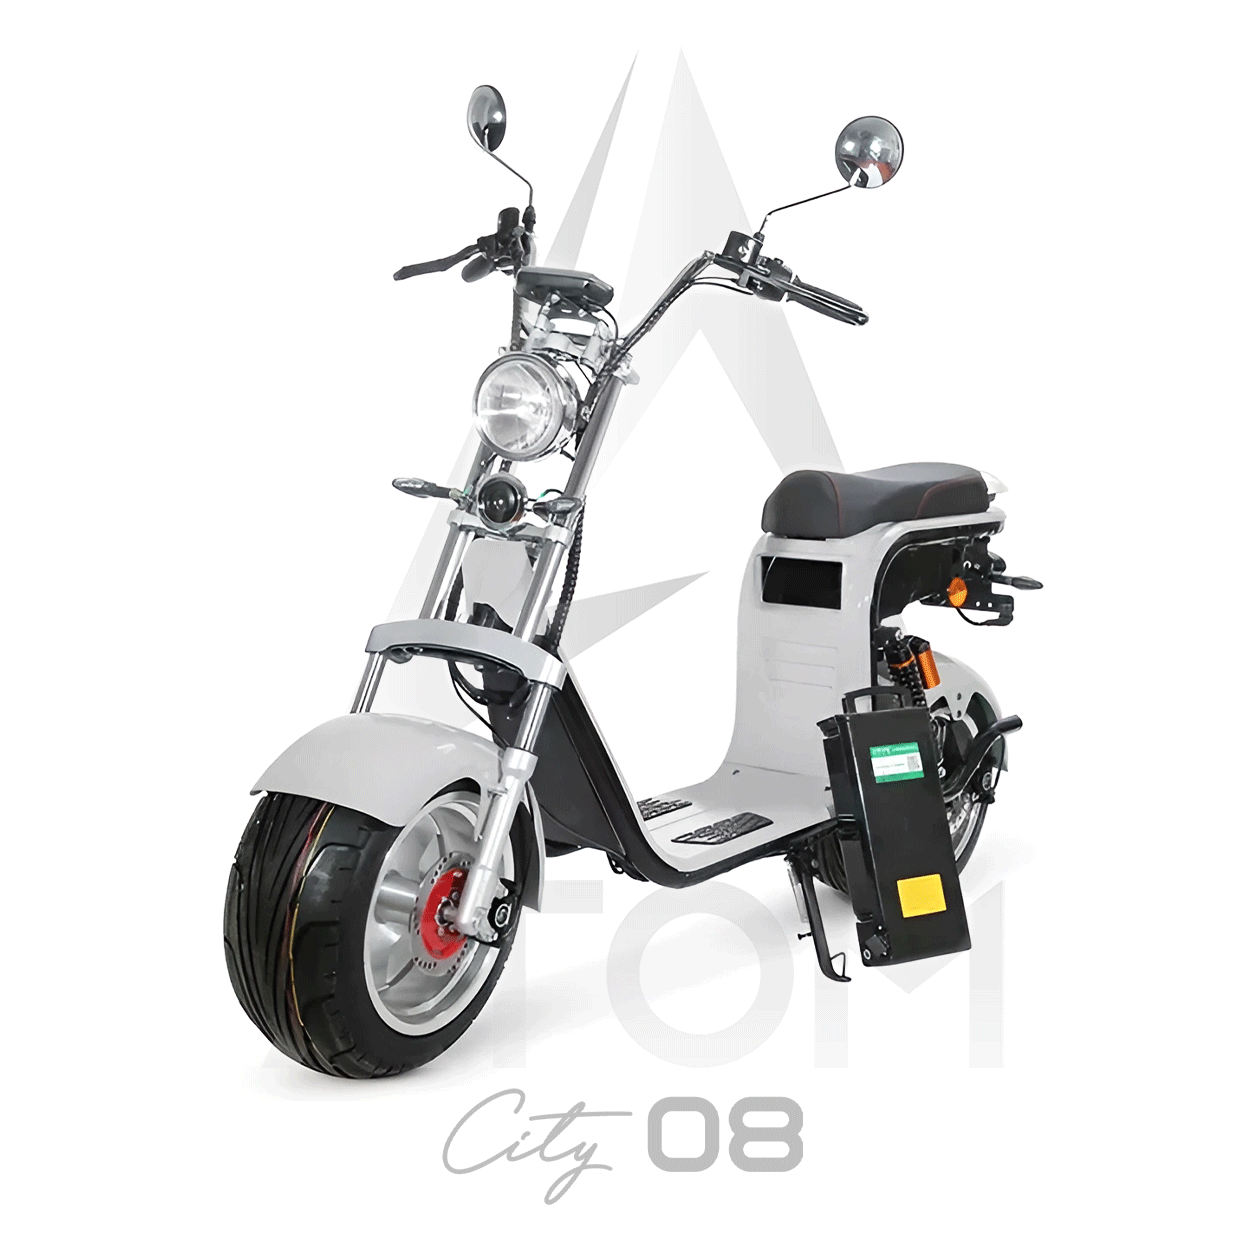 Scooter électrique, Atom City 08 | 2000 W | 50 cc | V-max 45 km/h | Autonomie 60 km - Atom Motors